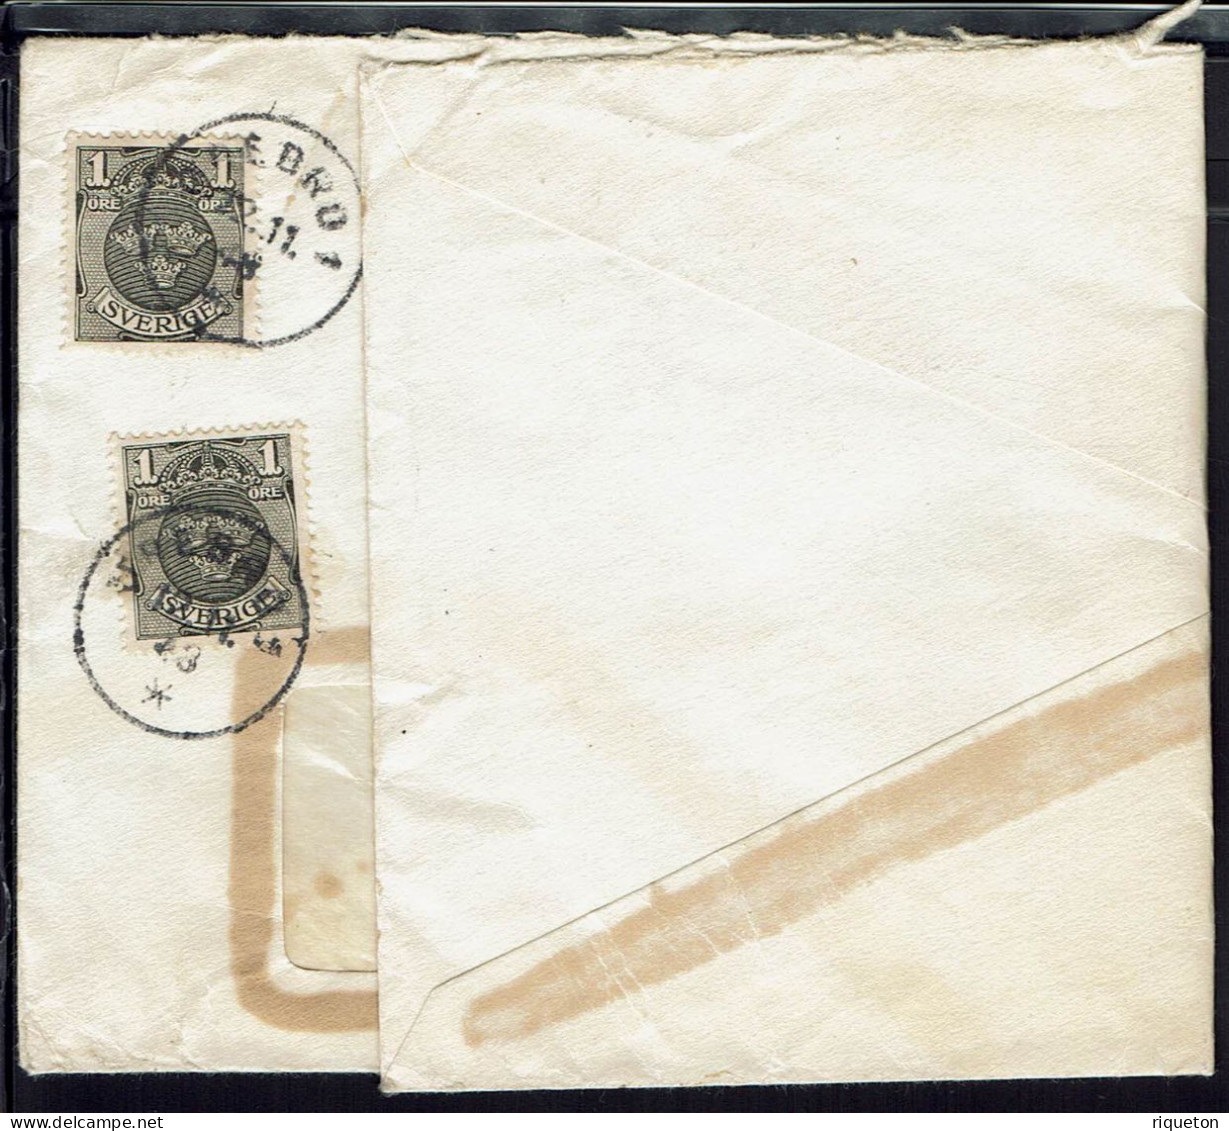 Affranchissement Multiple Sur Enveloppe à Fenêtre  A.B  Svensk  Fotokonst  Orebro. Cachets Orebro 1 Du 12-11-1948. - Covers & Documents